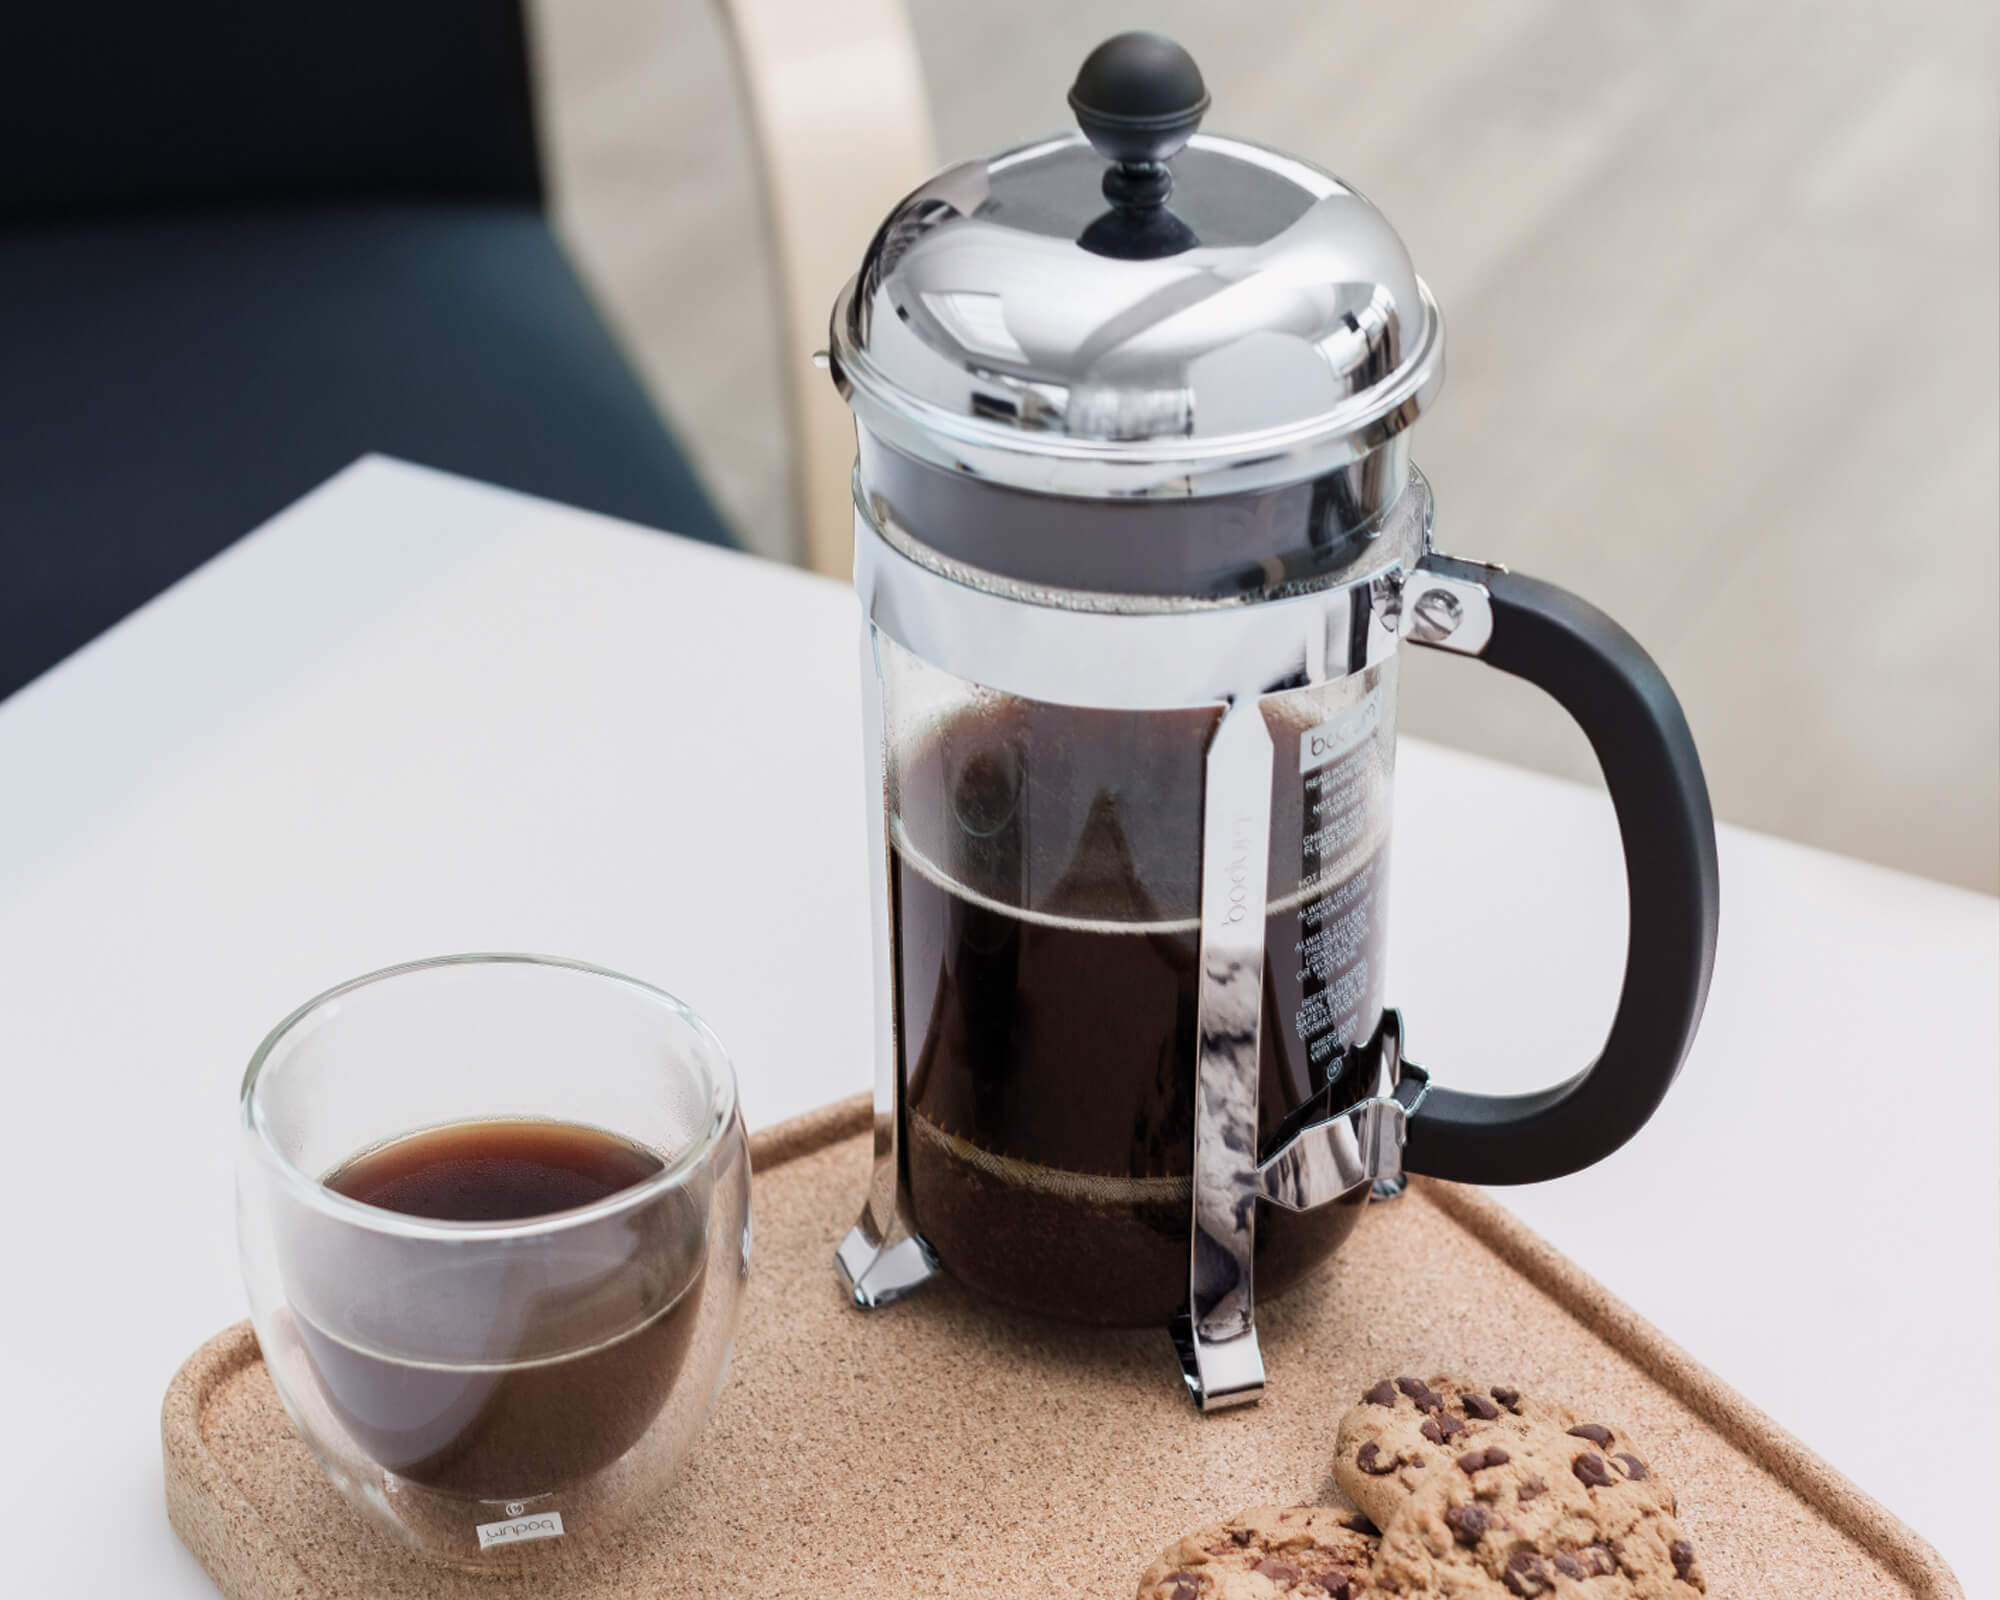 BODUM® - Cafetière à piston CAFFETTIERA 1,0 L - Noir